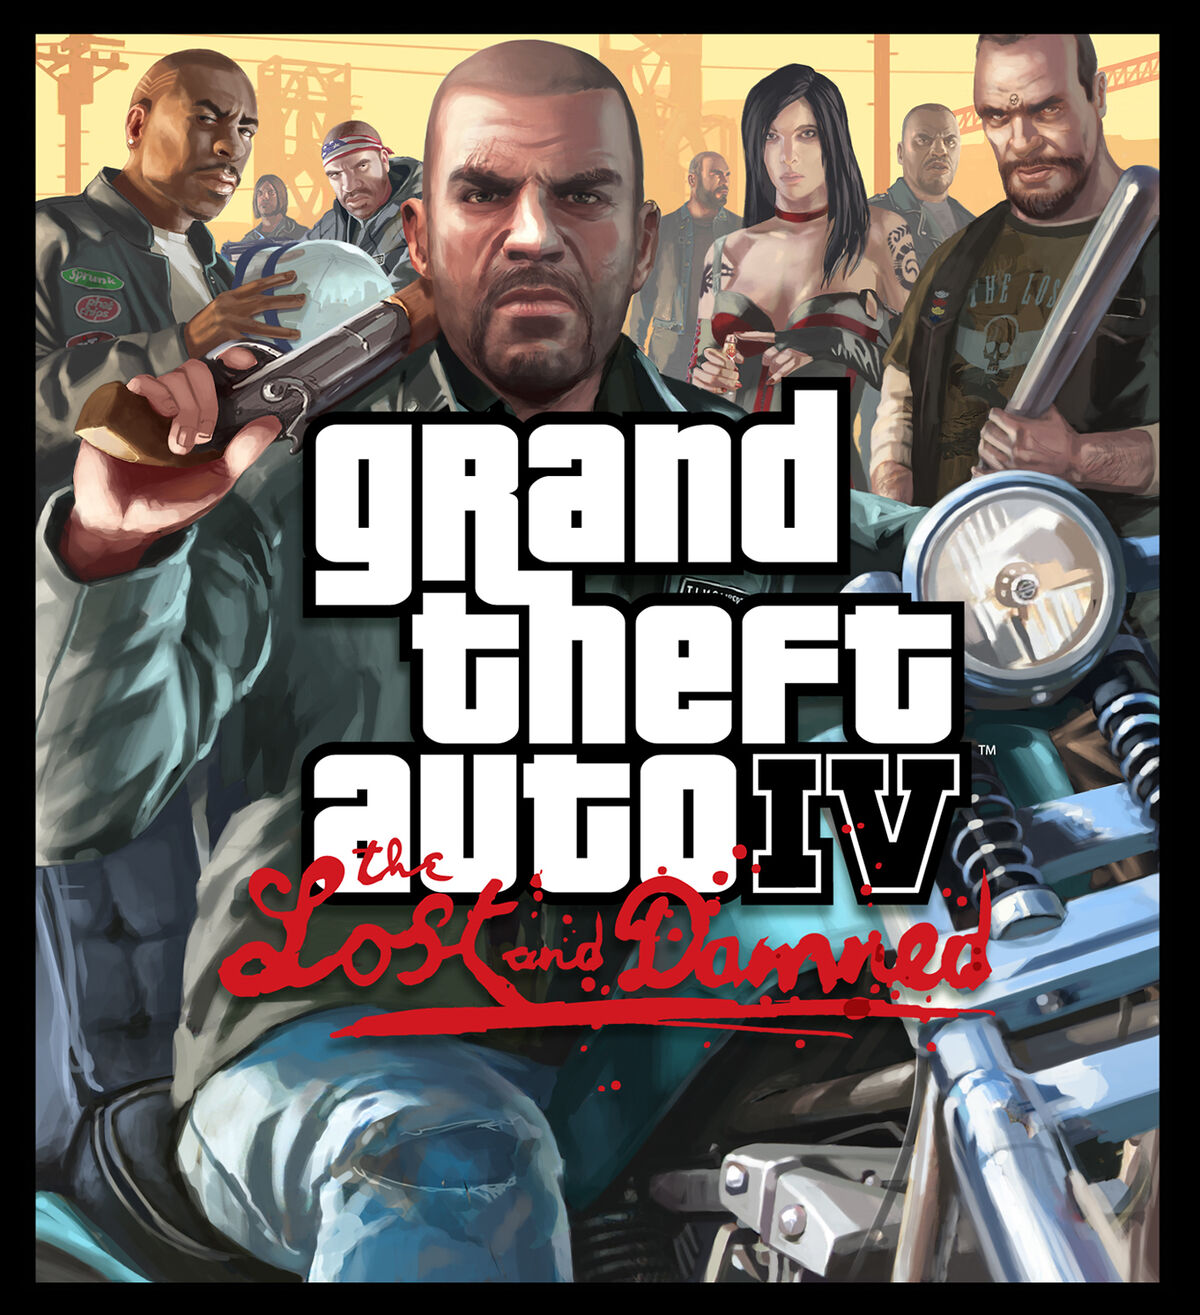 GRAND THEFT AUTO IV - GTA 4 PS3 MÍDIA DIGITAL - LS Games